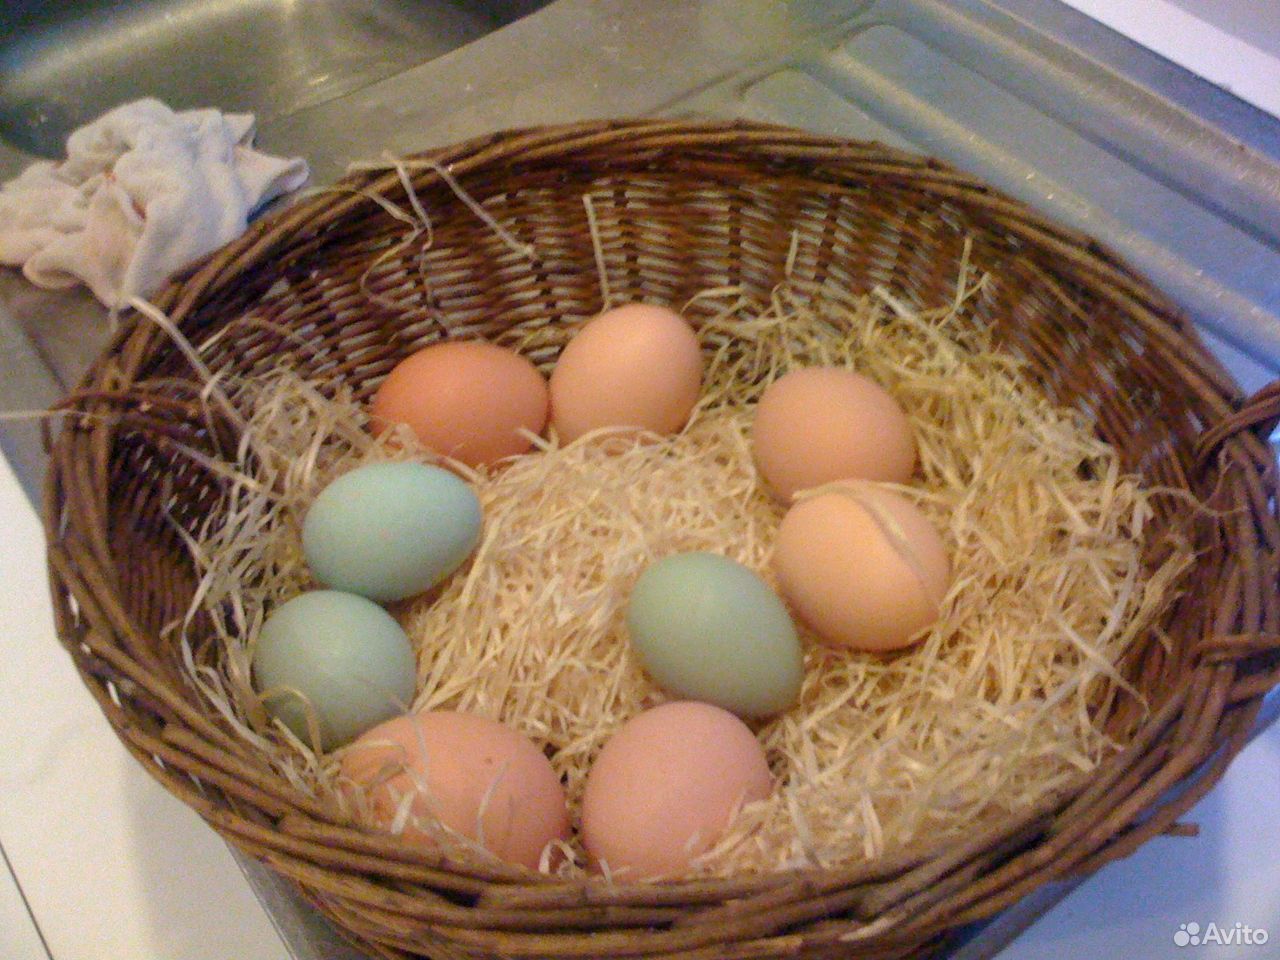 пасхальные куры и их яйца фото